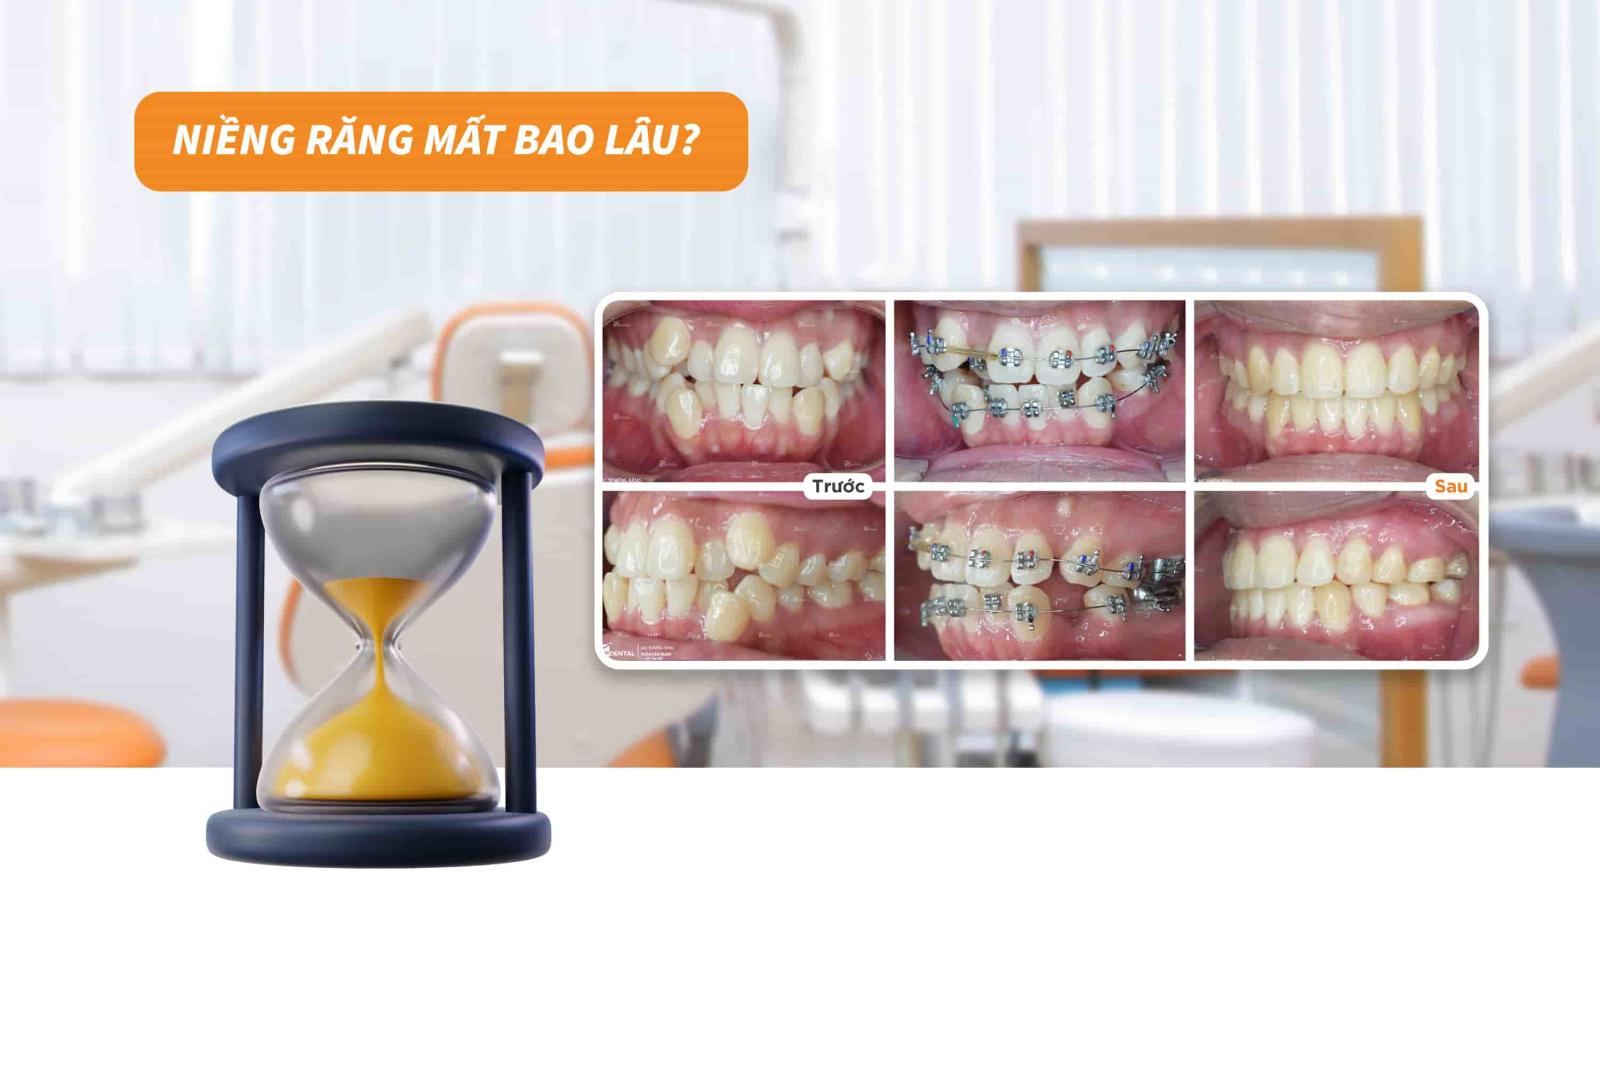 Niềng răng mất bao lâu? 